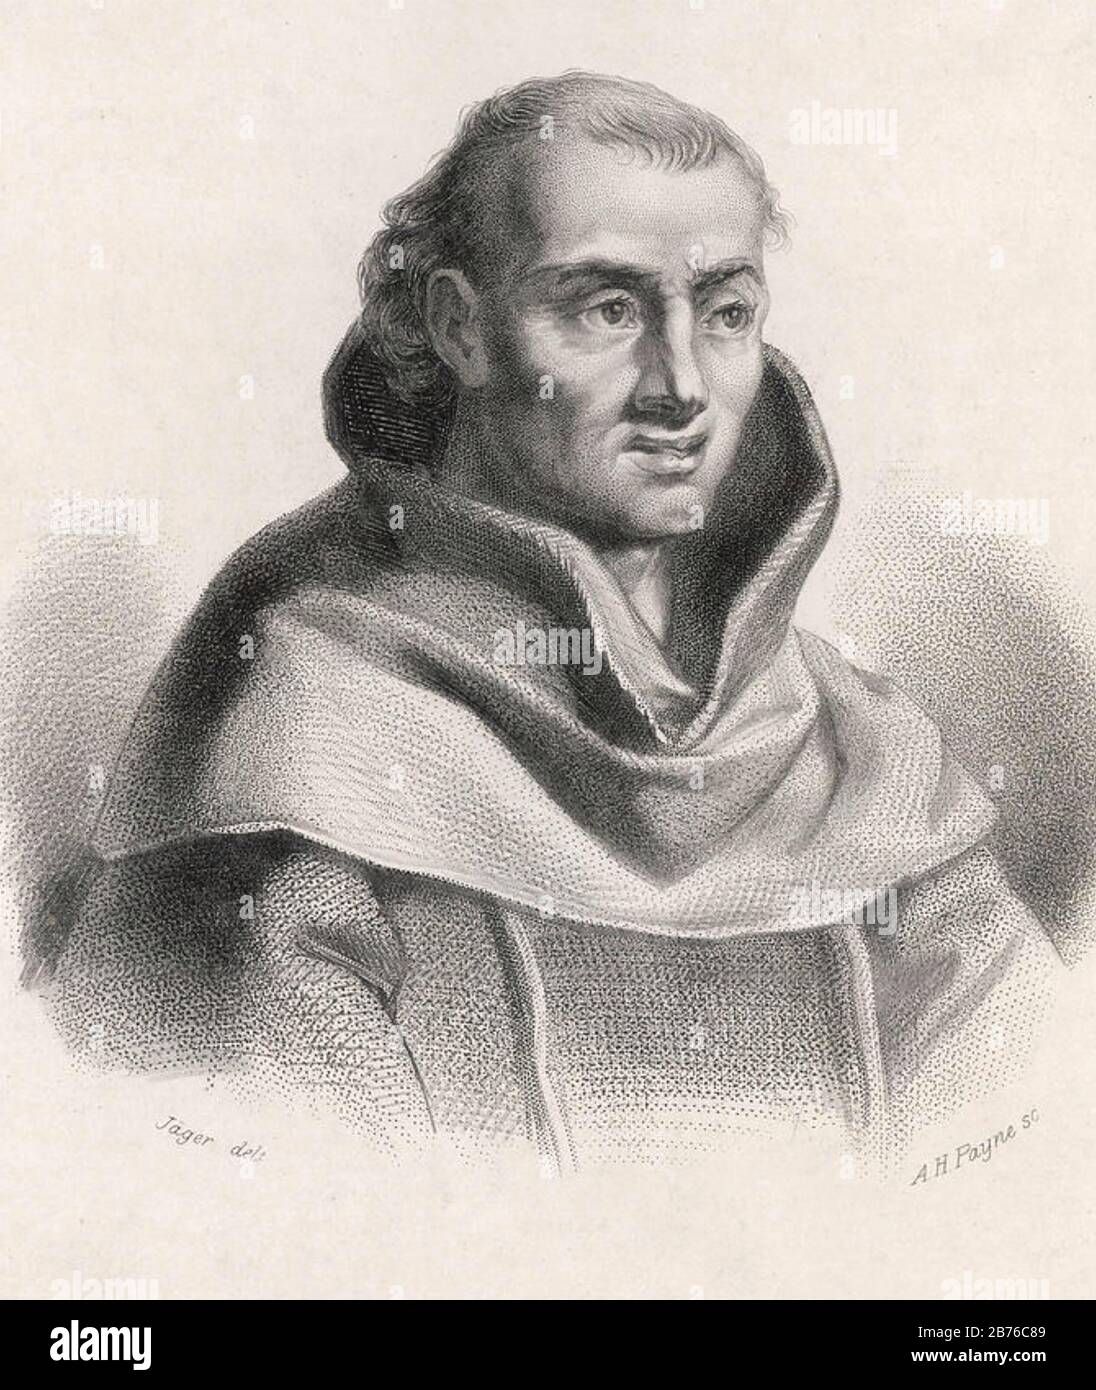 JOHANN TETZEL (c 1465-1519) Domherr und Prediger des Heiligen römischen Imperiums, berühmt für den Verkauf von Ablasshandel. Stockfoto